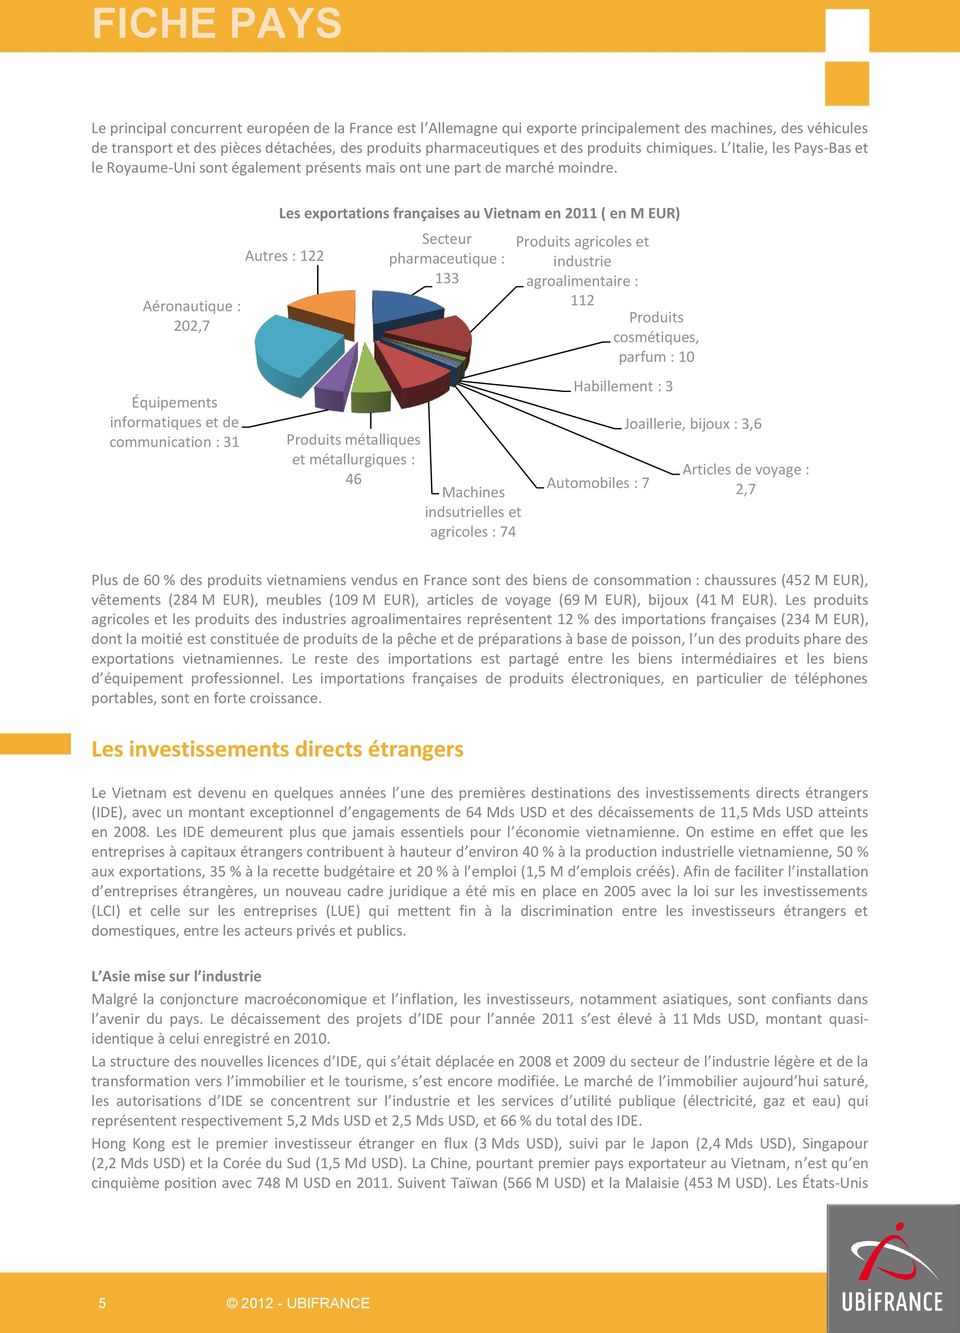 Aéronautique : 202,7 Équipements informatiques et de communication : 31 Les exportations françaises au en 2011 ( en M EUR) Autres : 122 Produits métalliques et métallurgiques : 46 Secteur